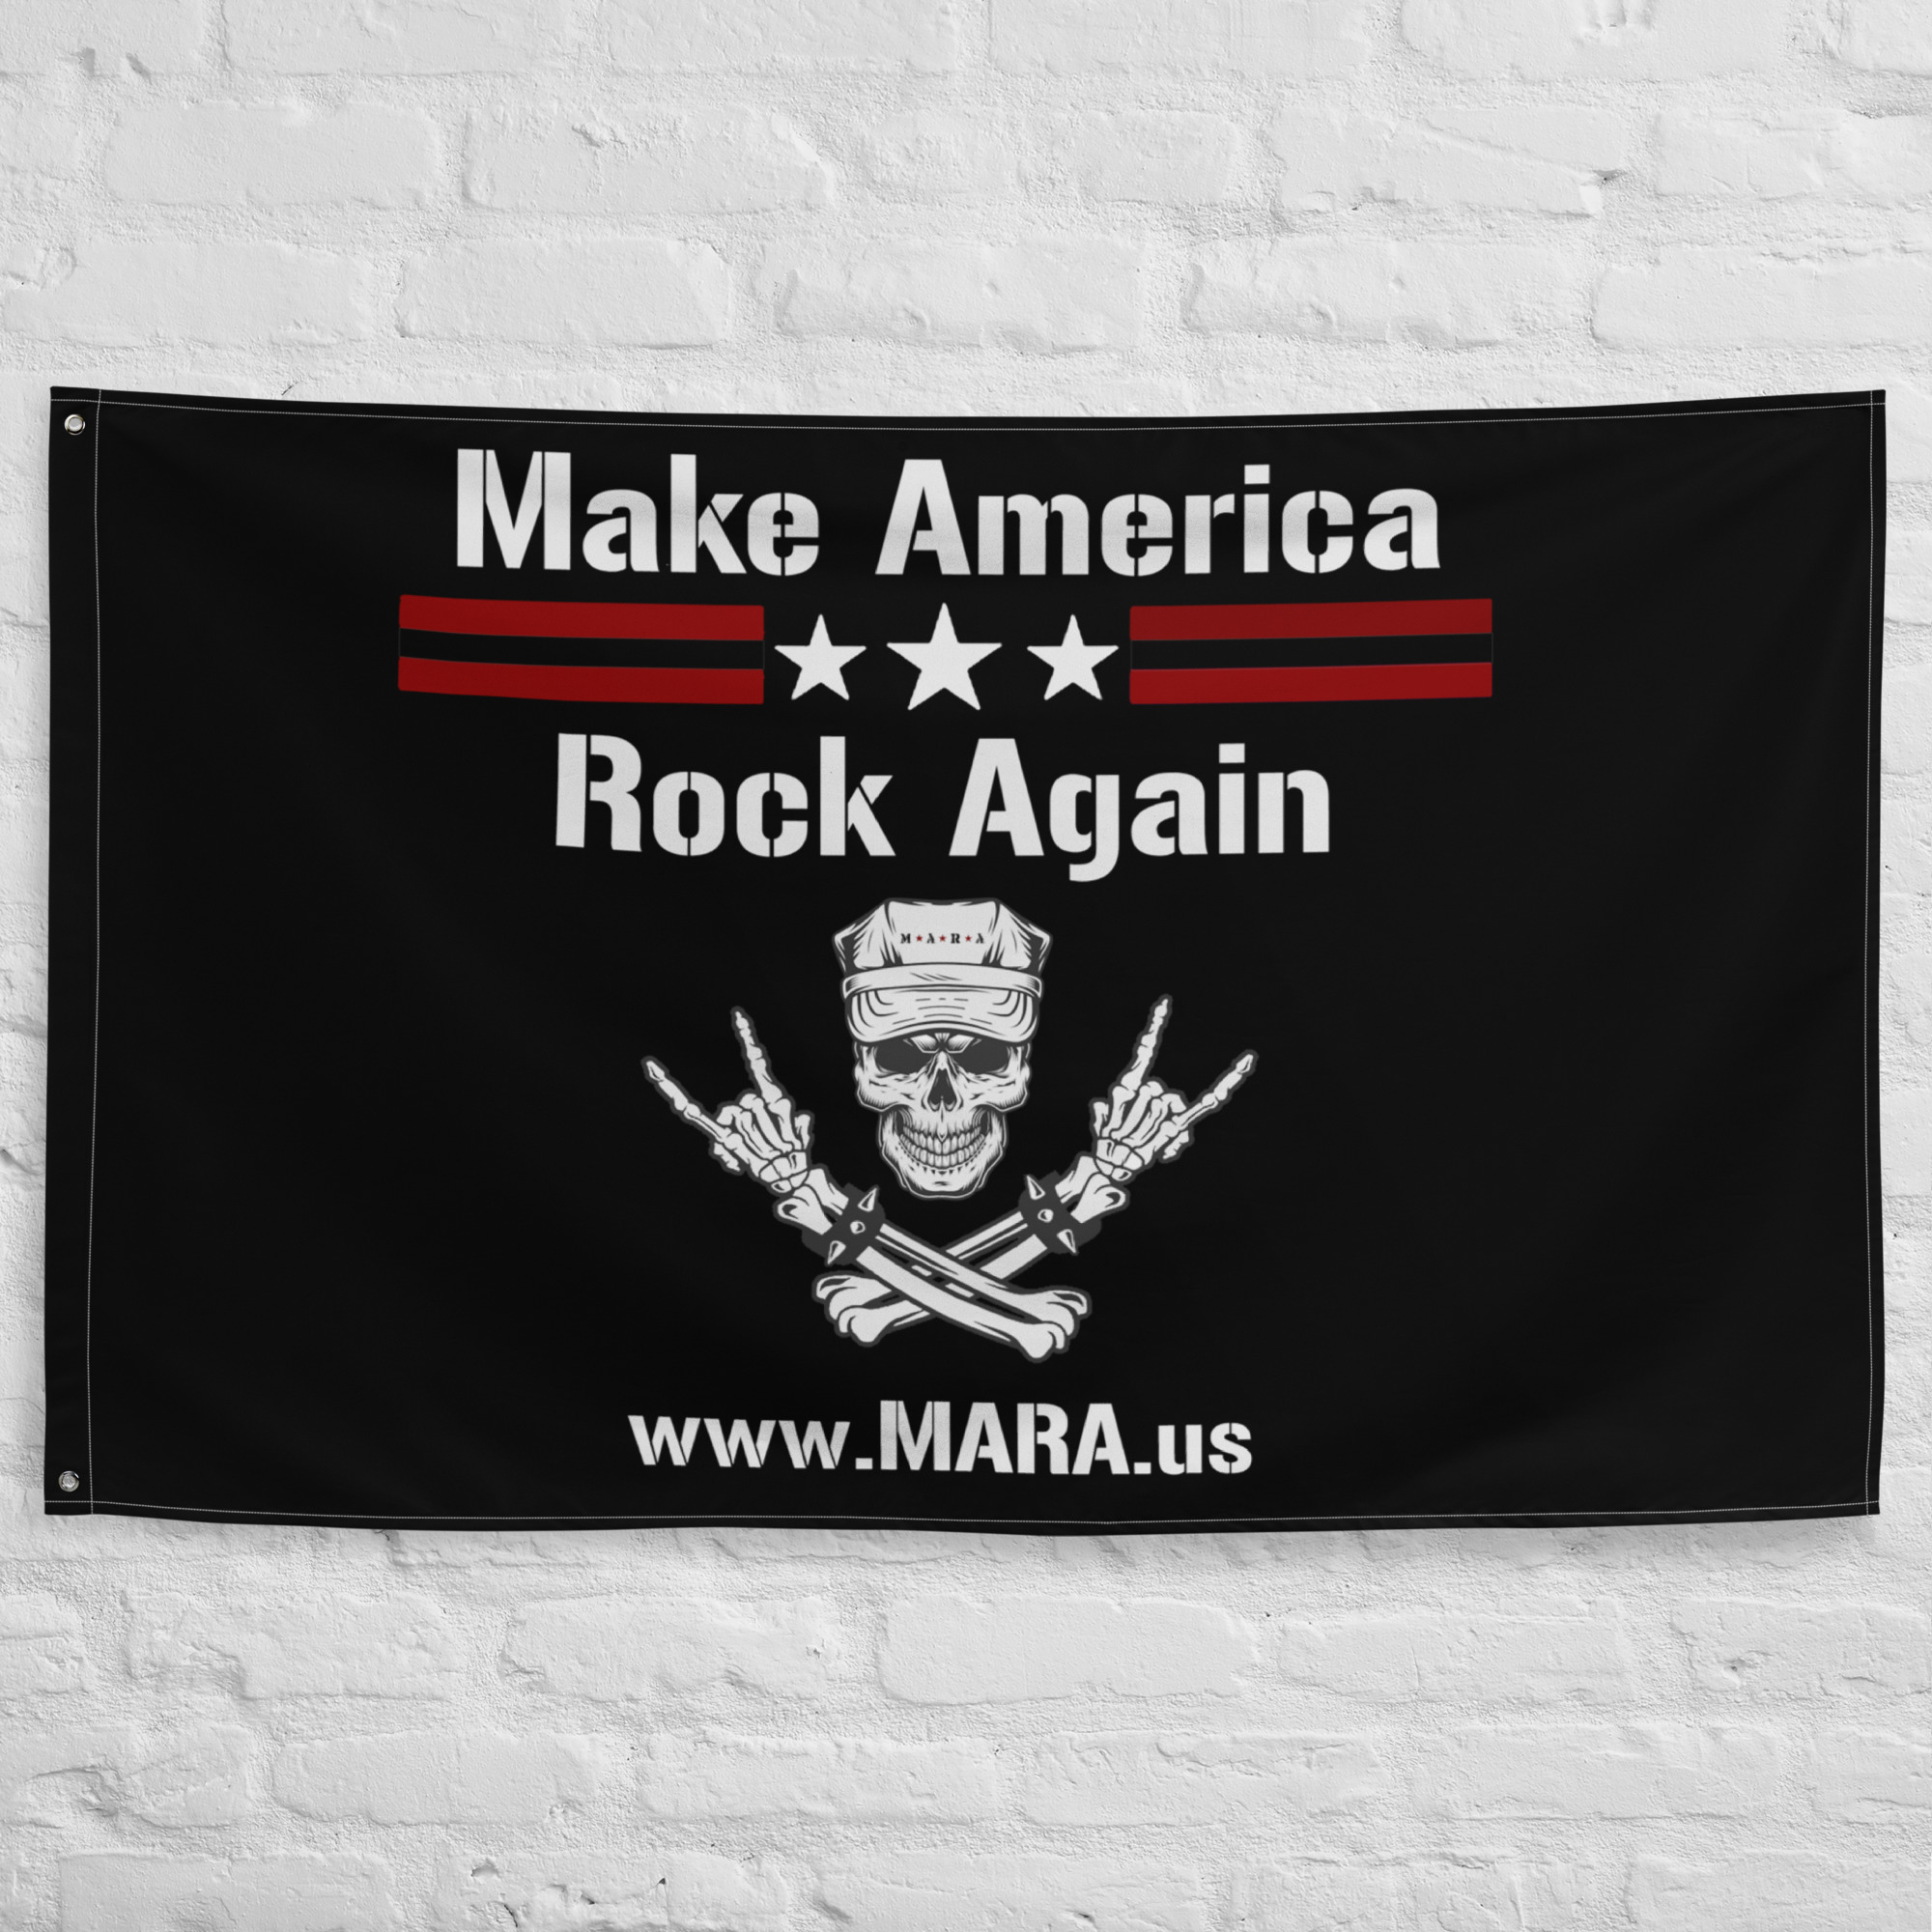 MARA banner